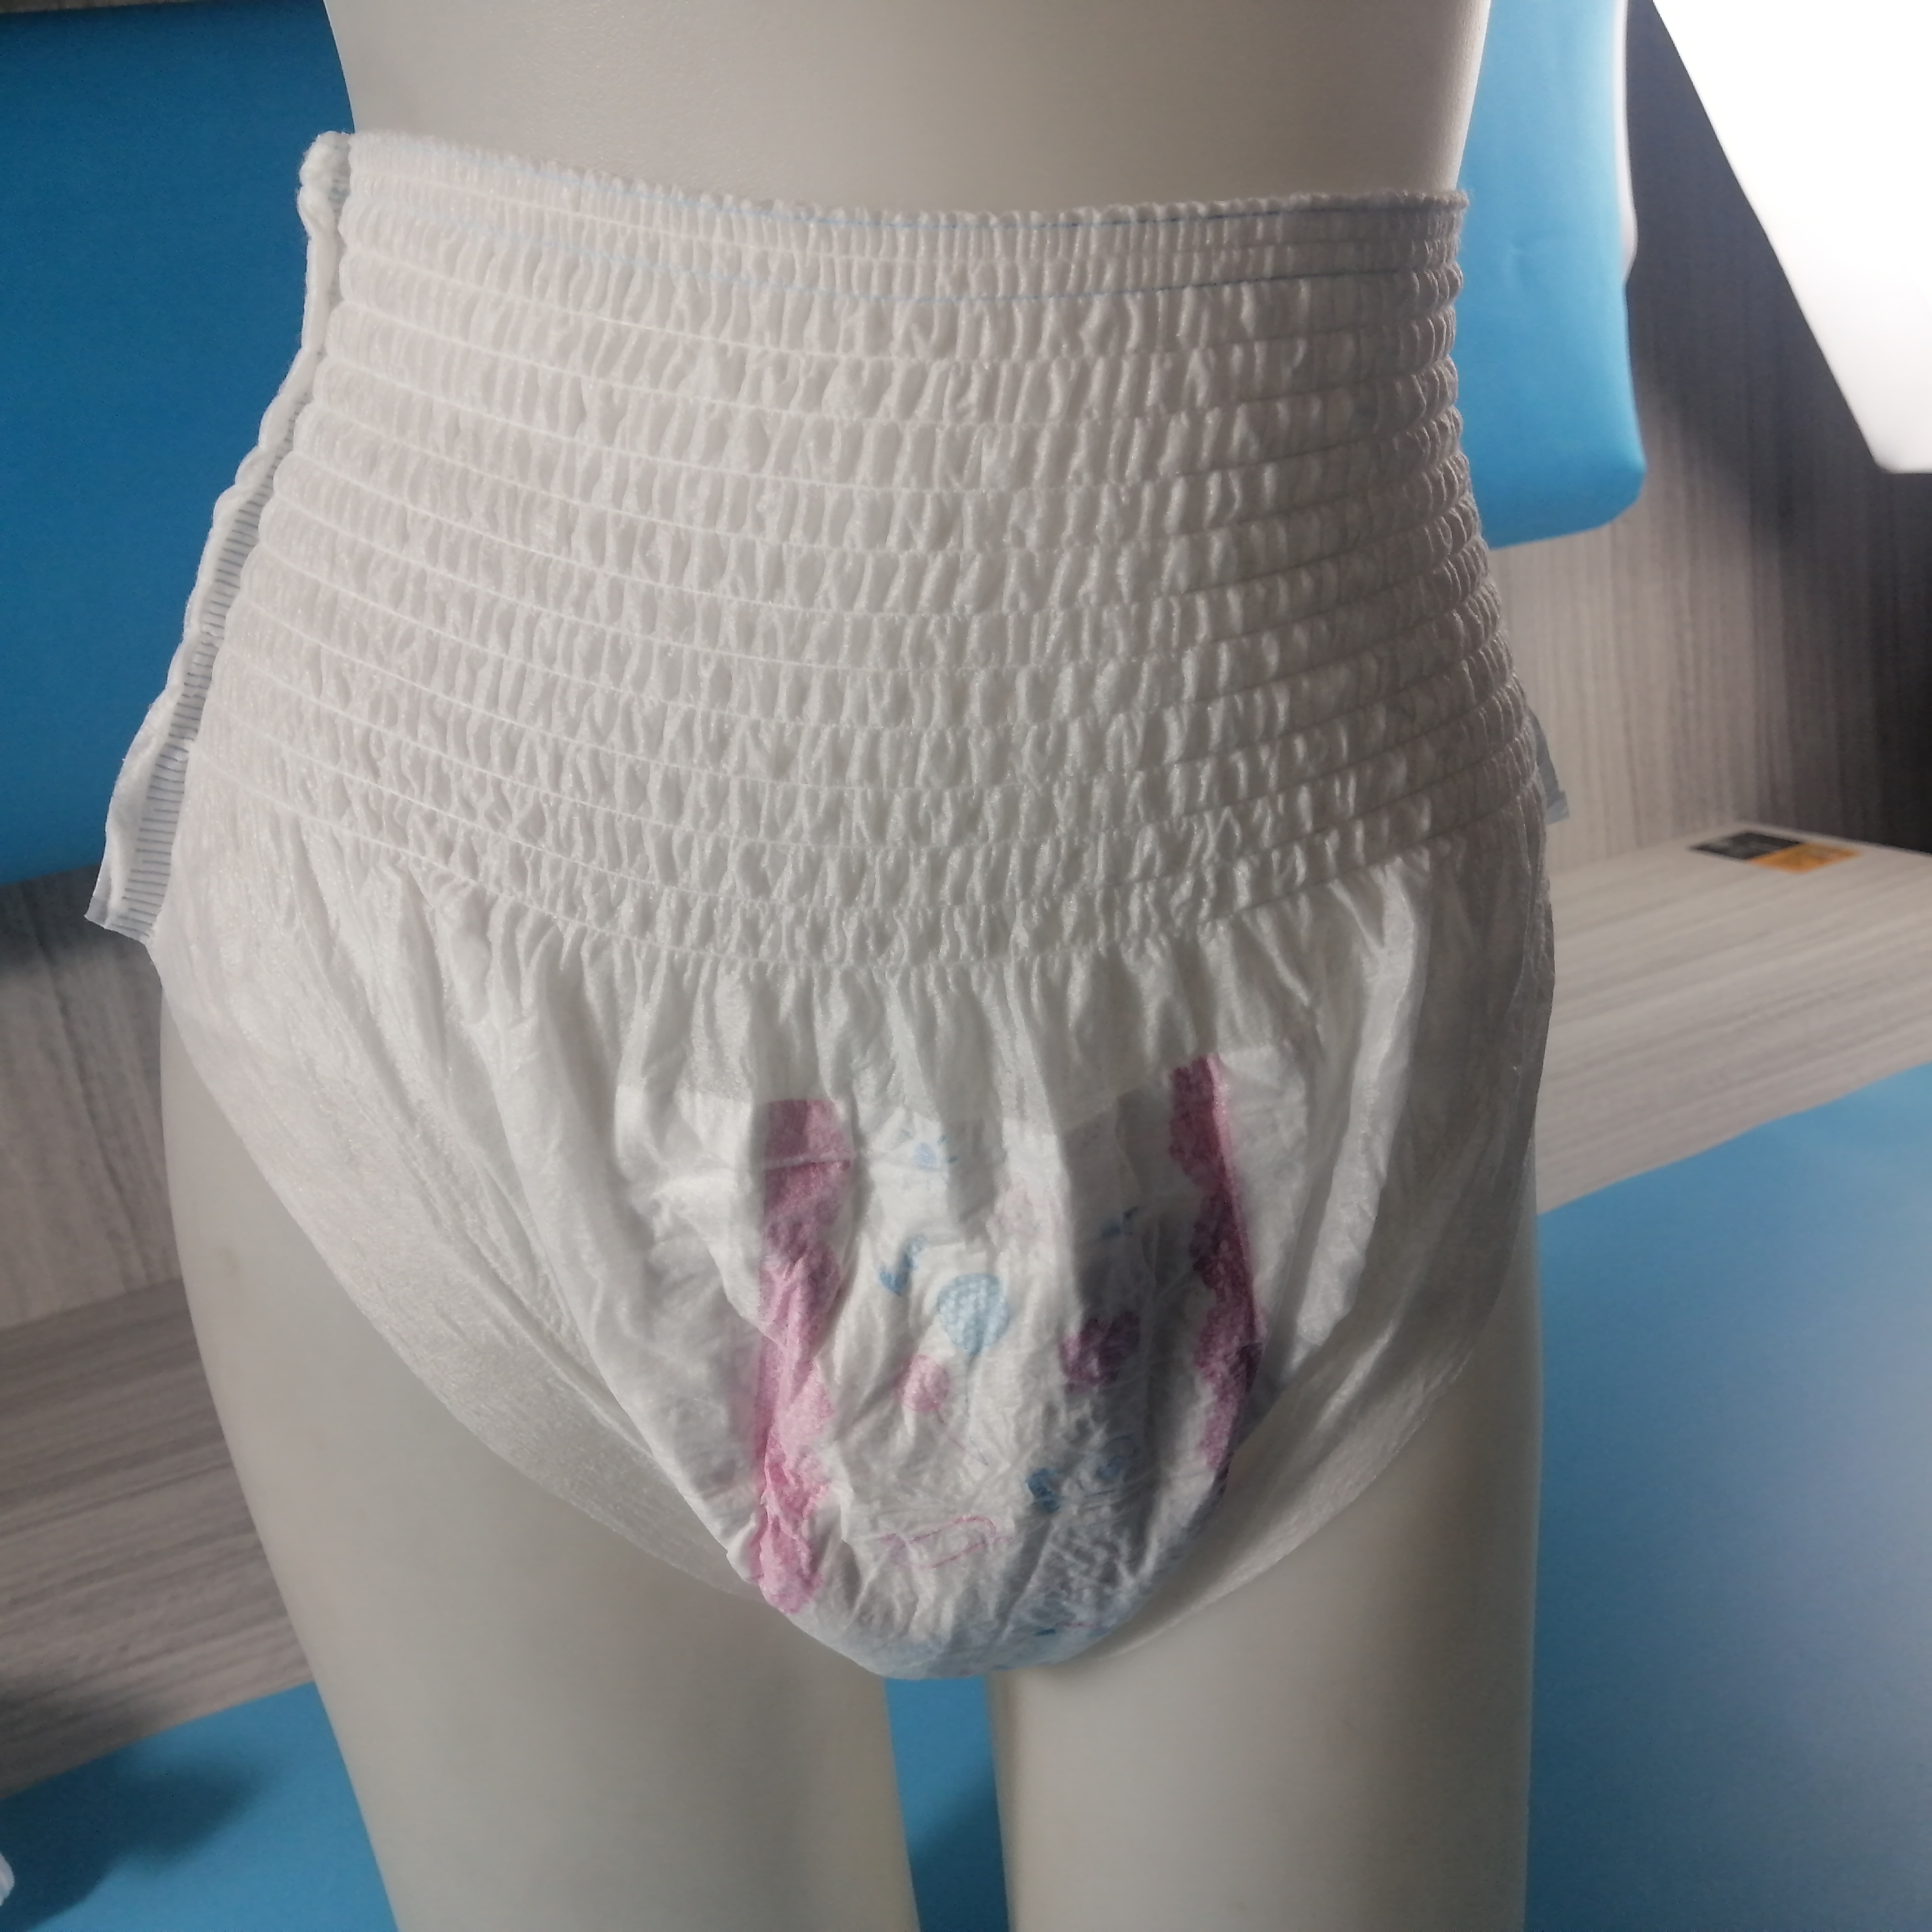 Baixo preço melhor qualidade descartável venda quente calças menstruais respirável saudável guardanapo sanitário tipo calcinha para mulher